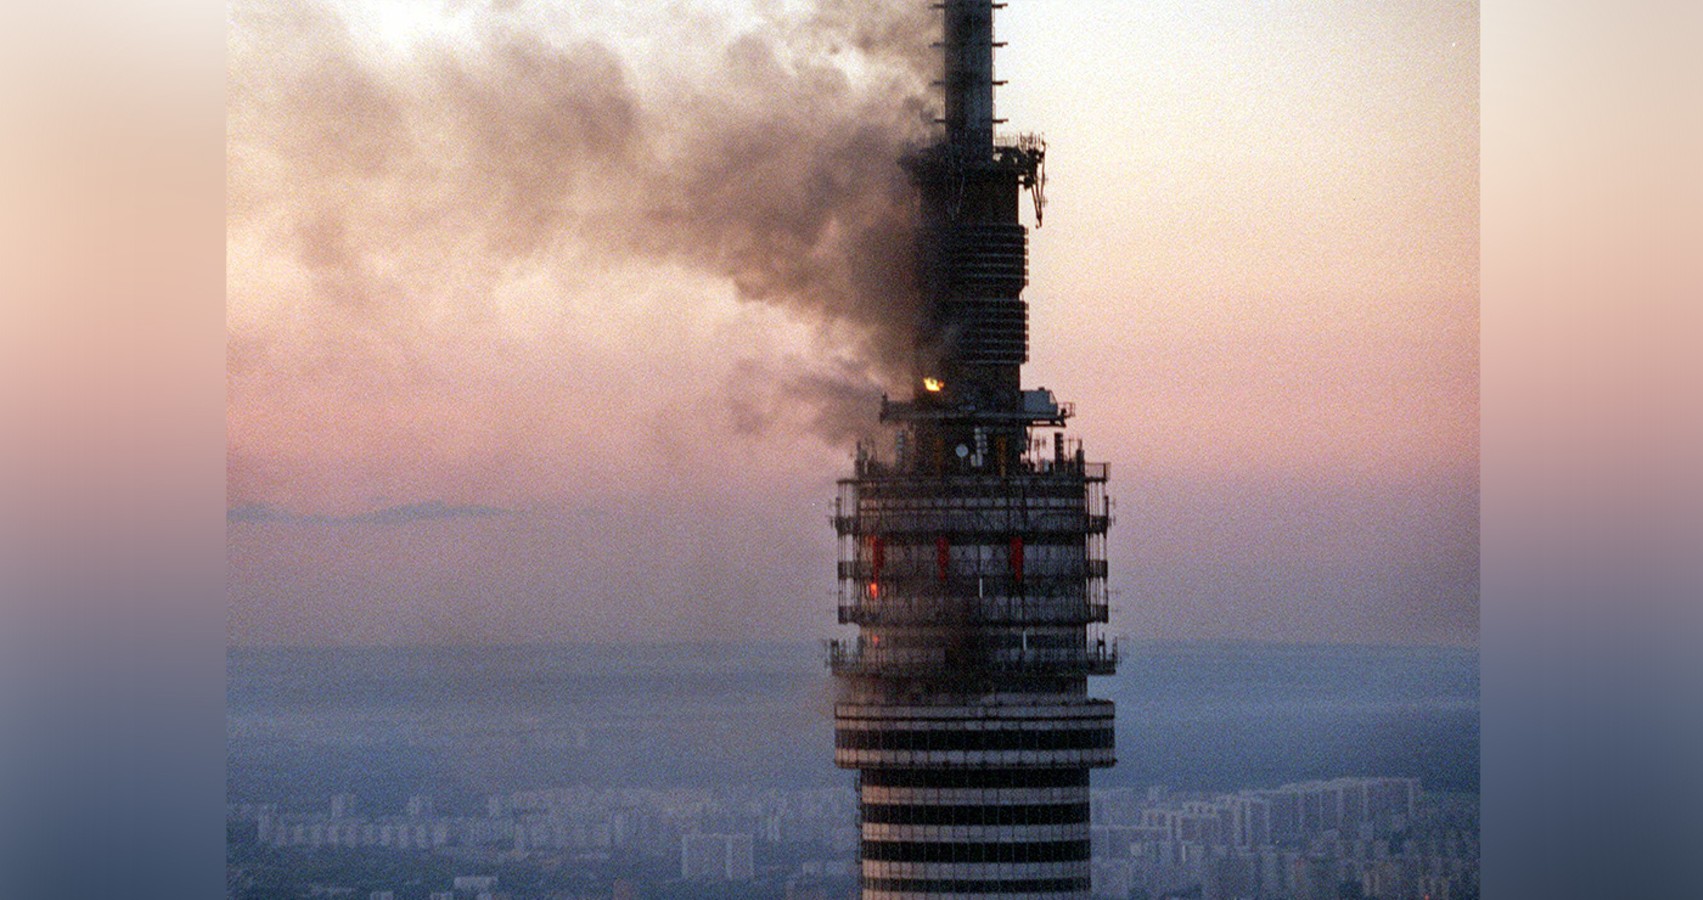 Подробности сильнейшего пожара в Останкинской телебашне в 2000 году – Москва 24, 27.08.2020